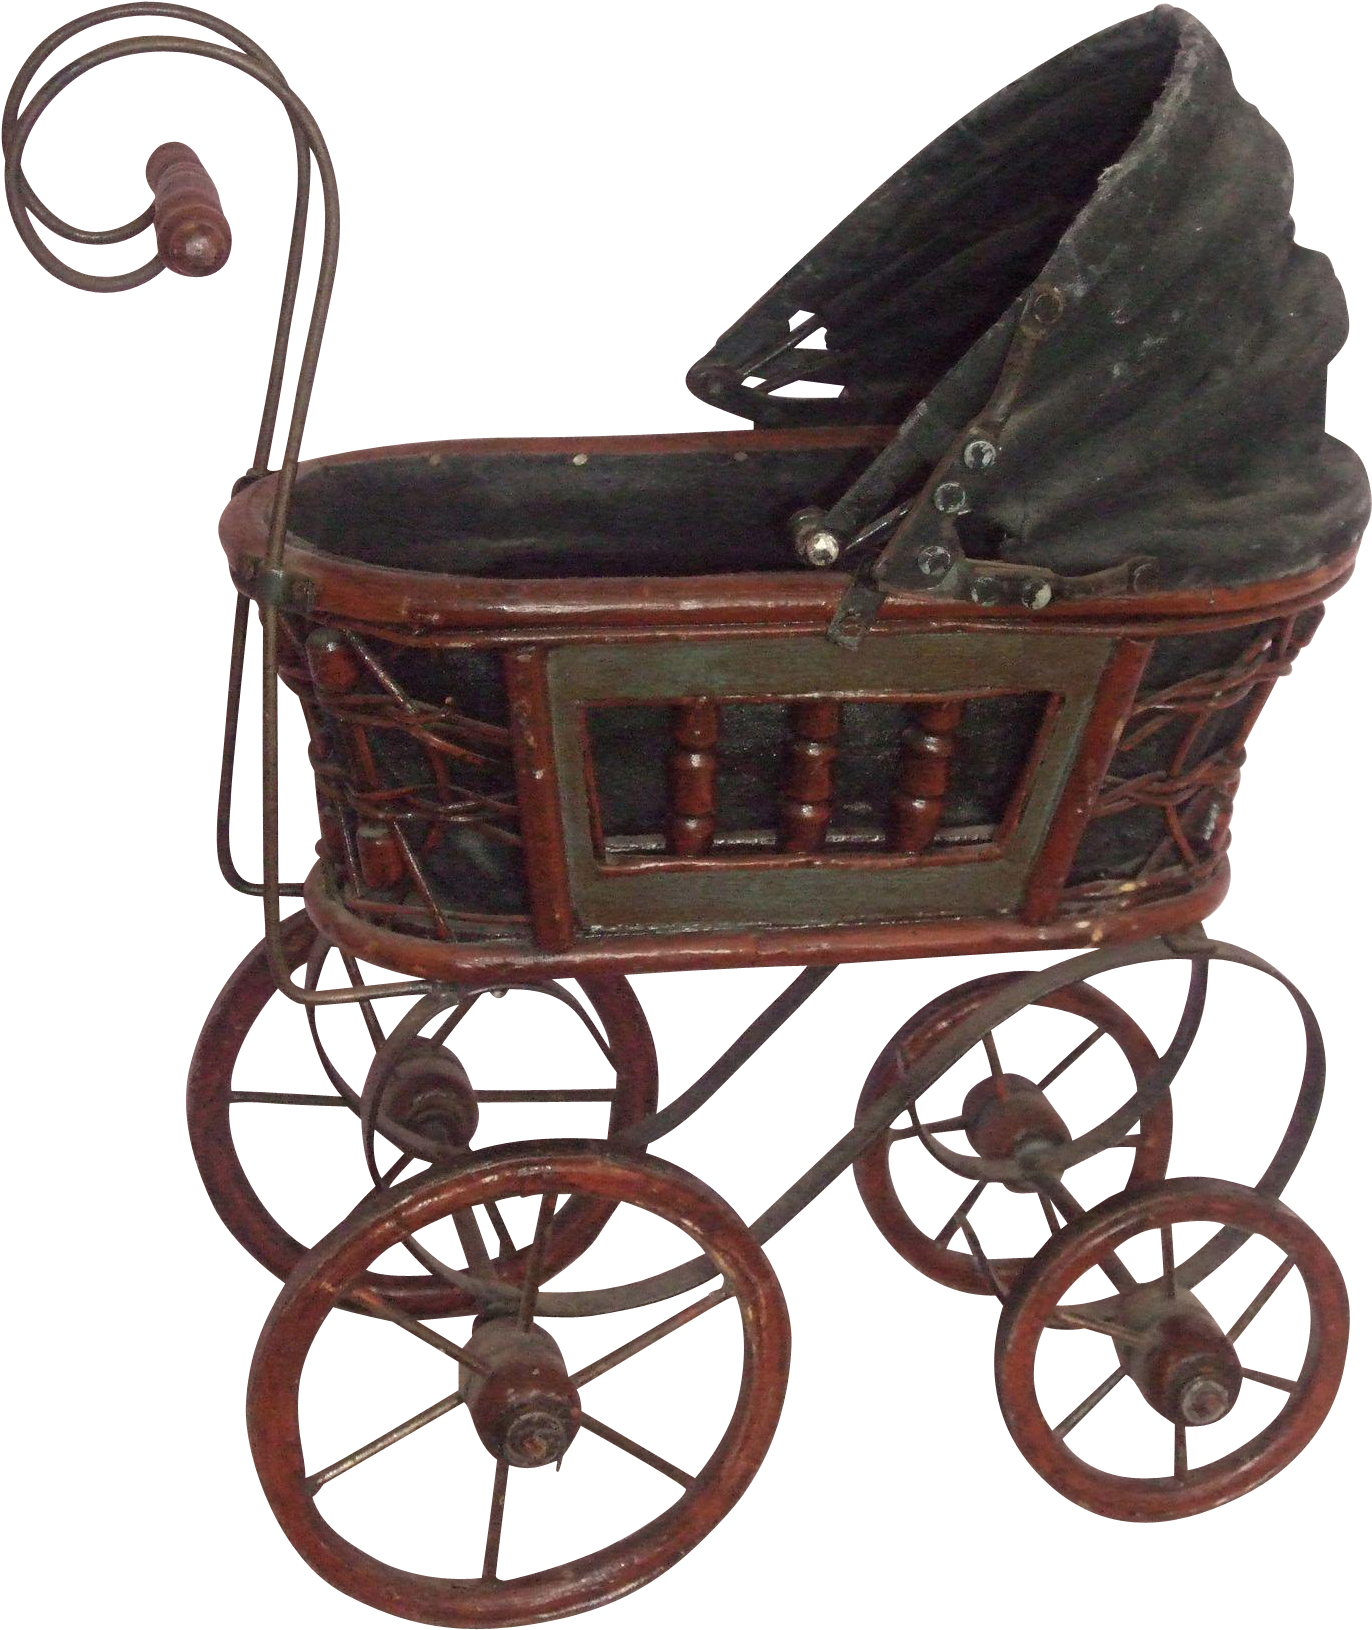 Antique Doll Stroller For 8" - Baby Stroller Transparent Background (1629x1629)